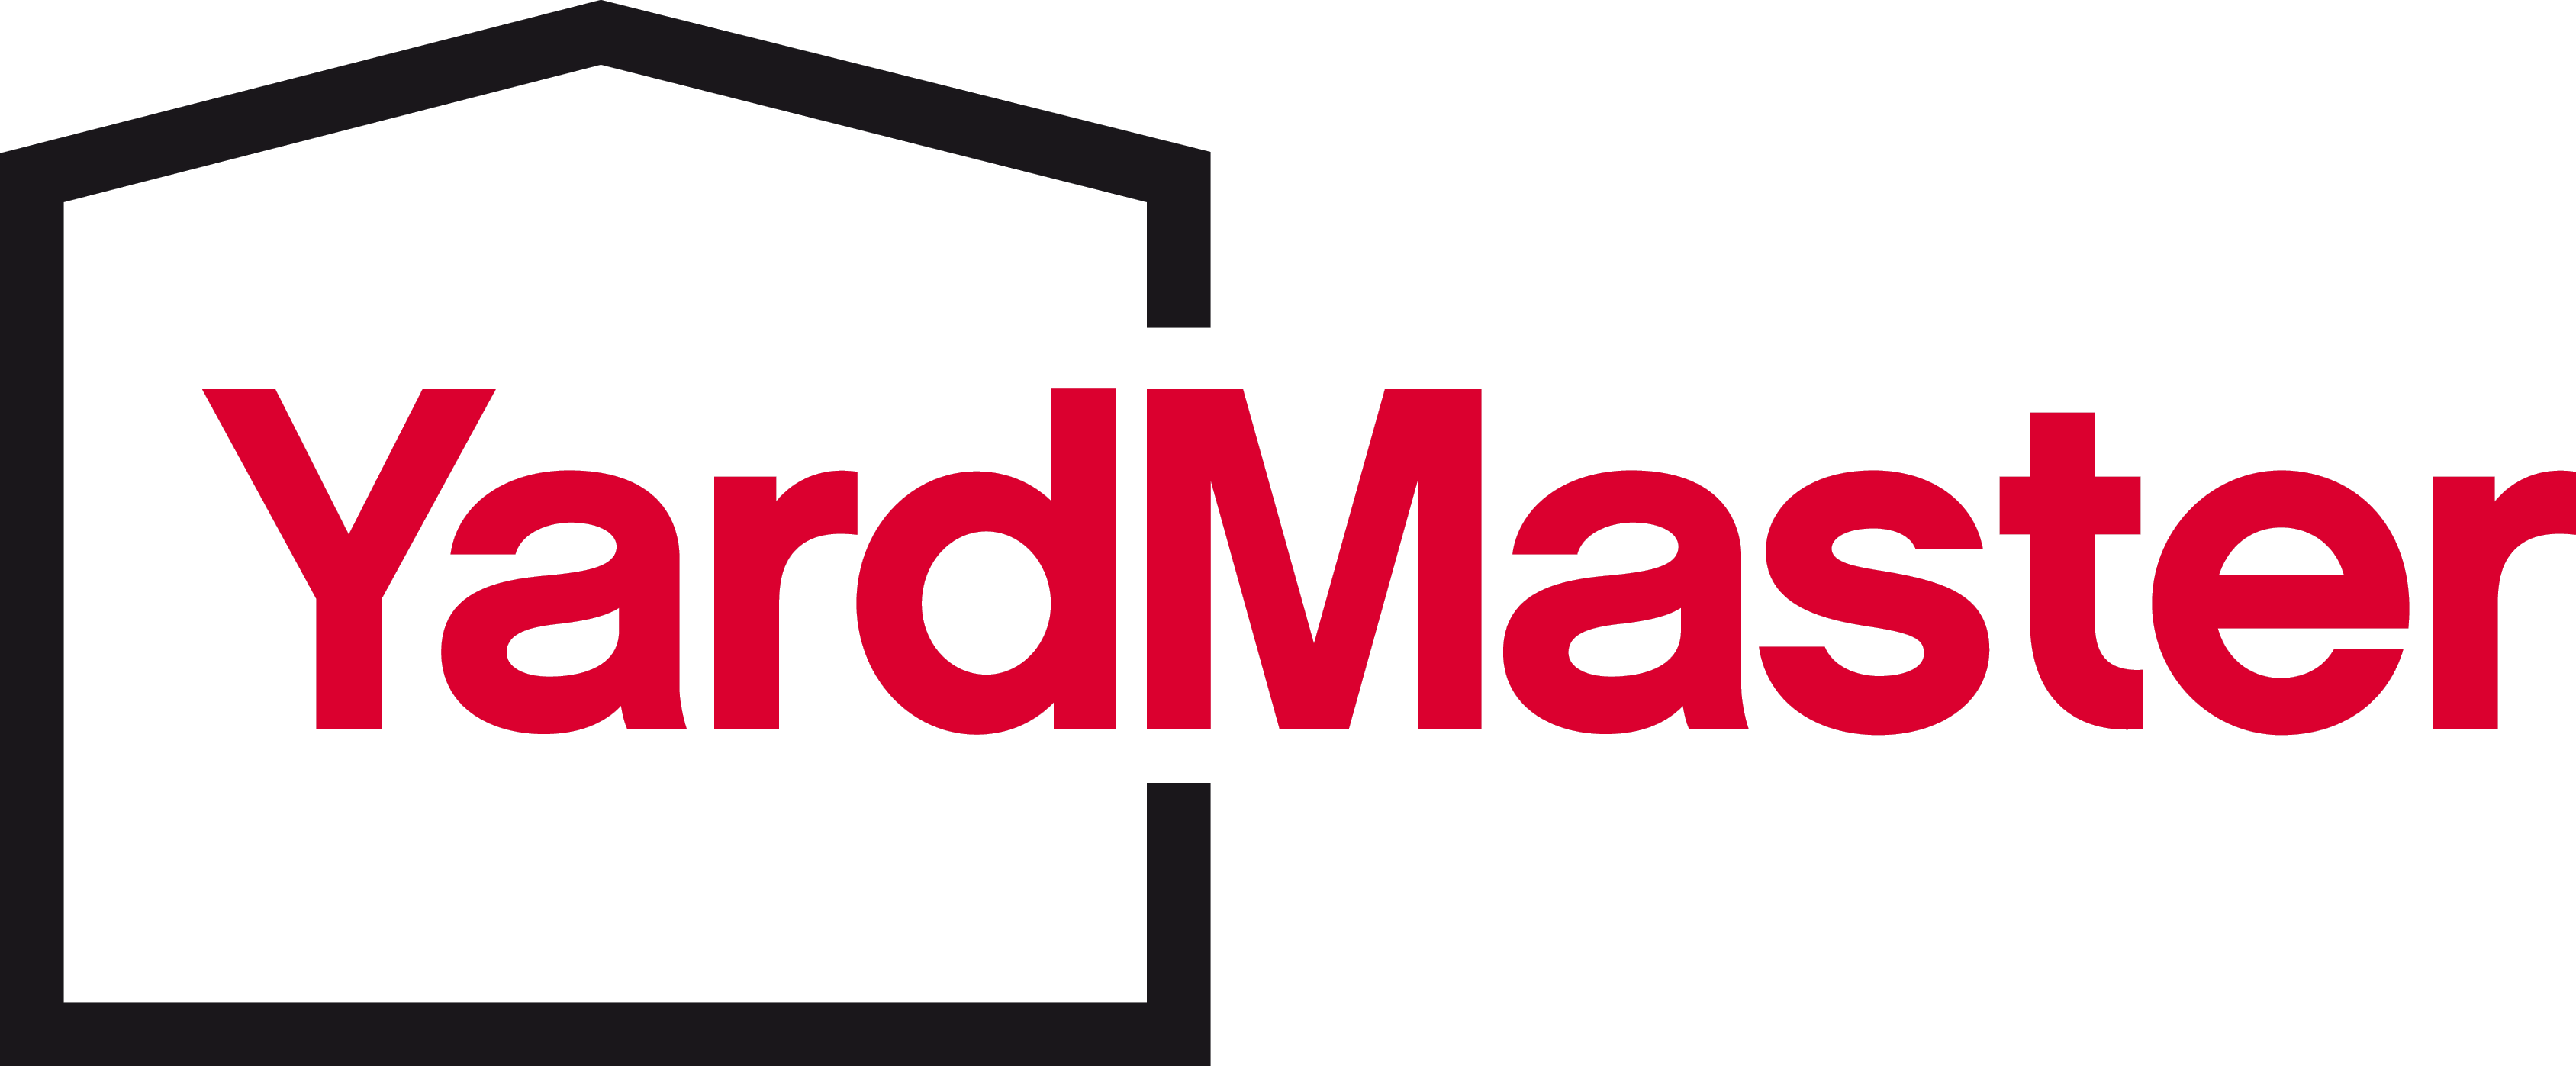 логотип бренда Master Yard